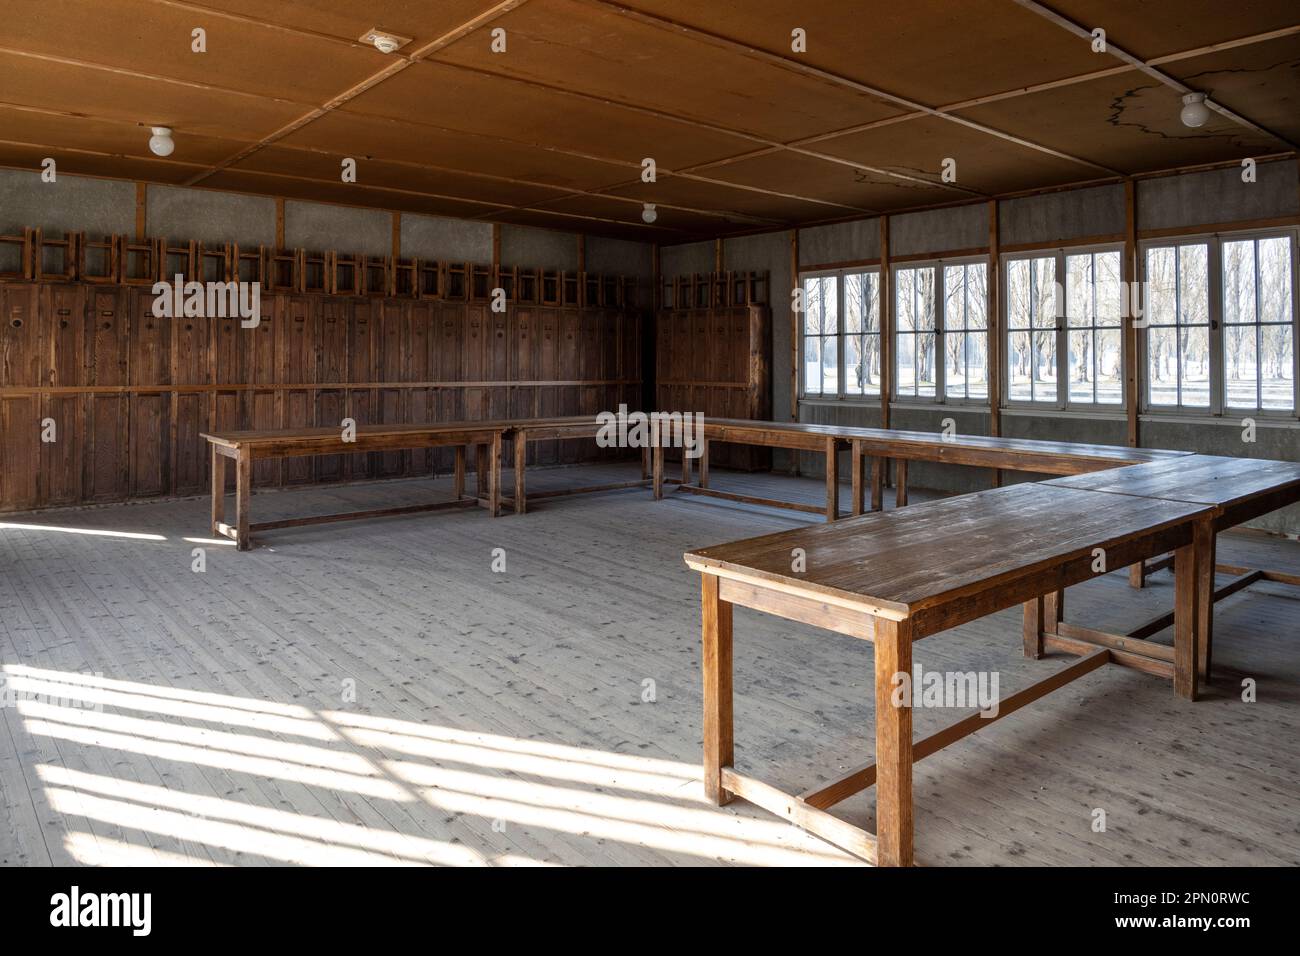 Salle commune utilisée comme salle à manger à l'intérieur des casernes du camp de concentration de Dachau avec les casiers des prisonniers le long du côté et les tabourets sur le dessus Banque D'Images